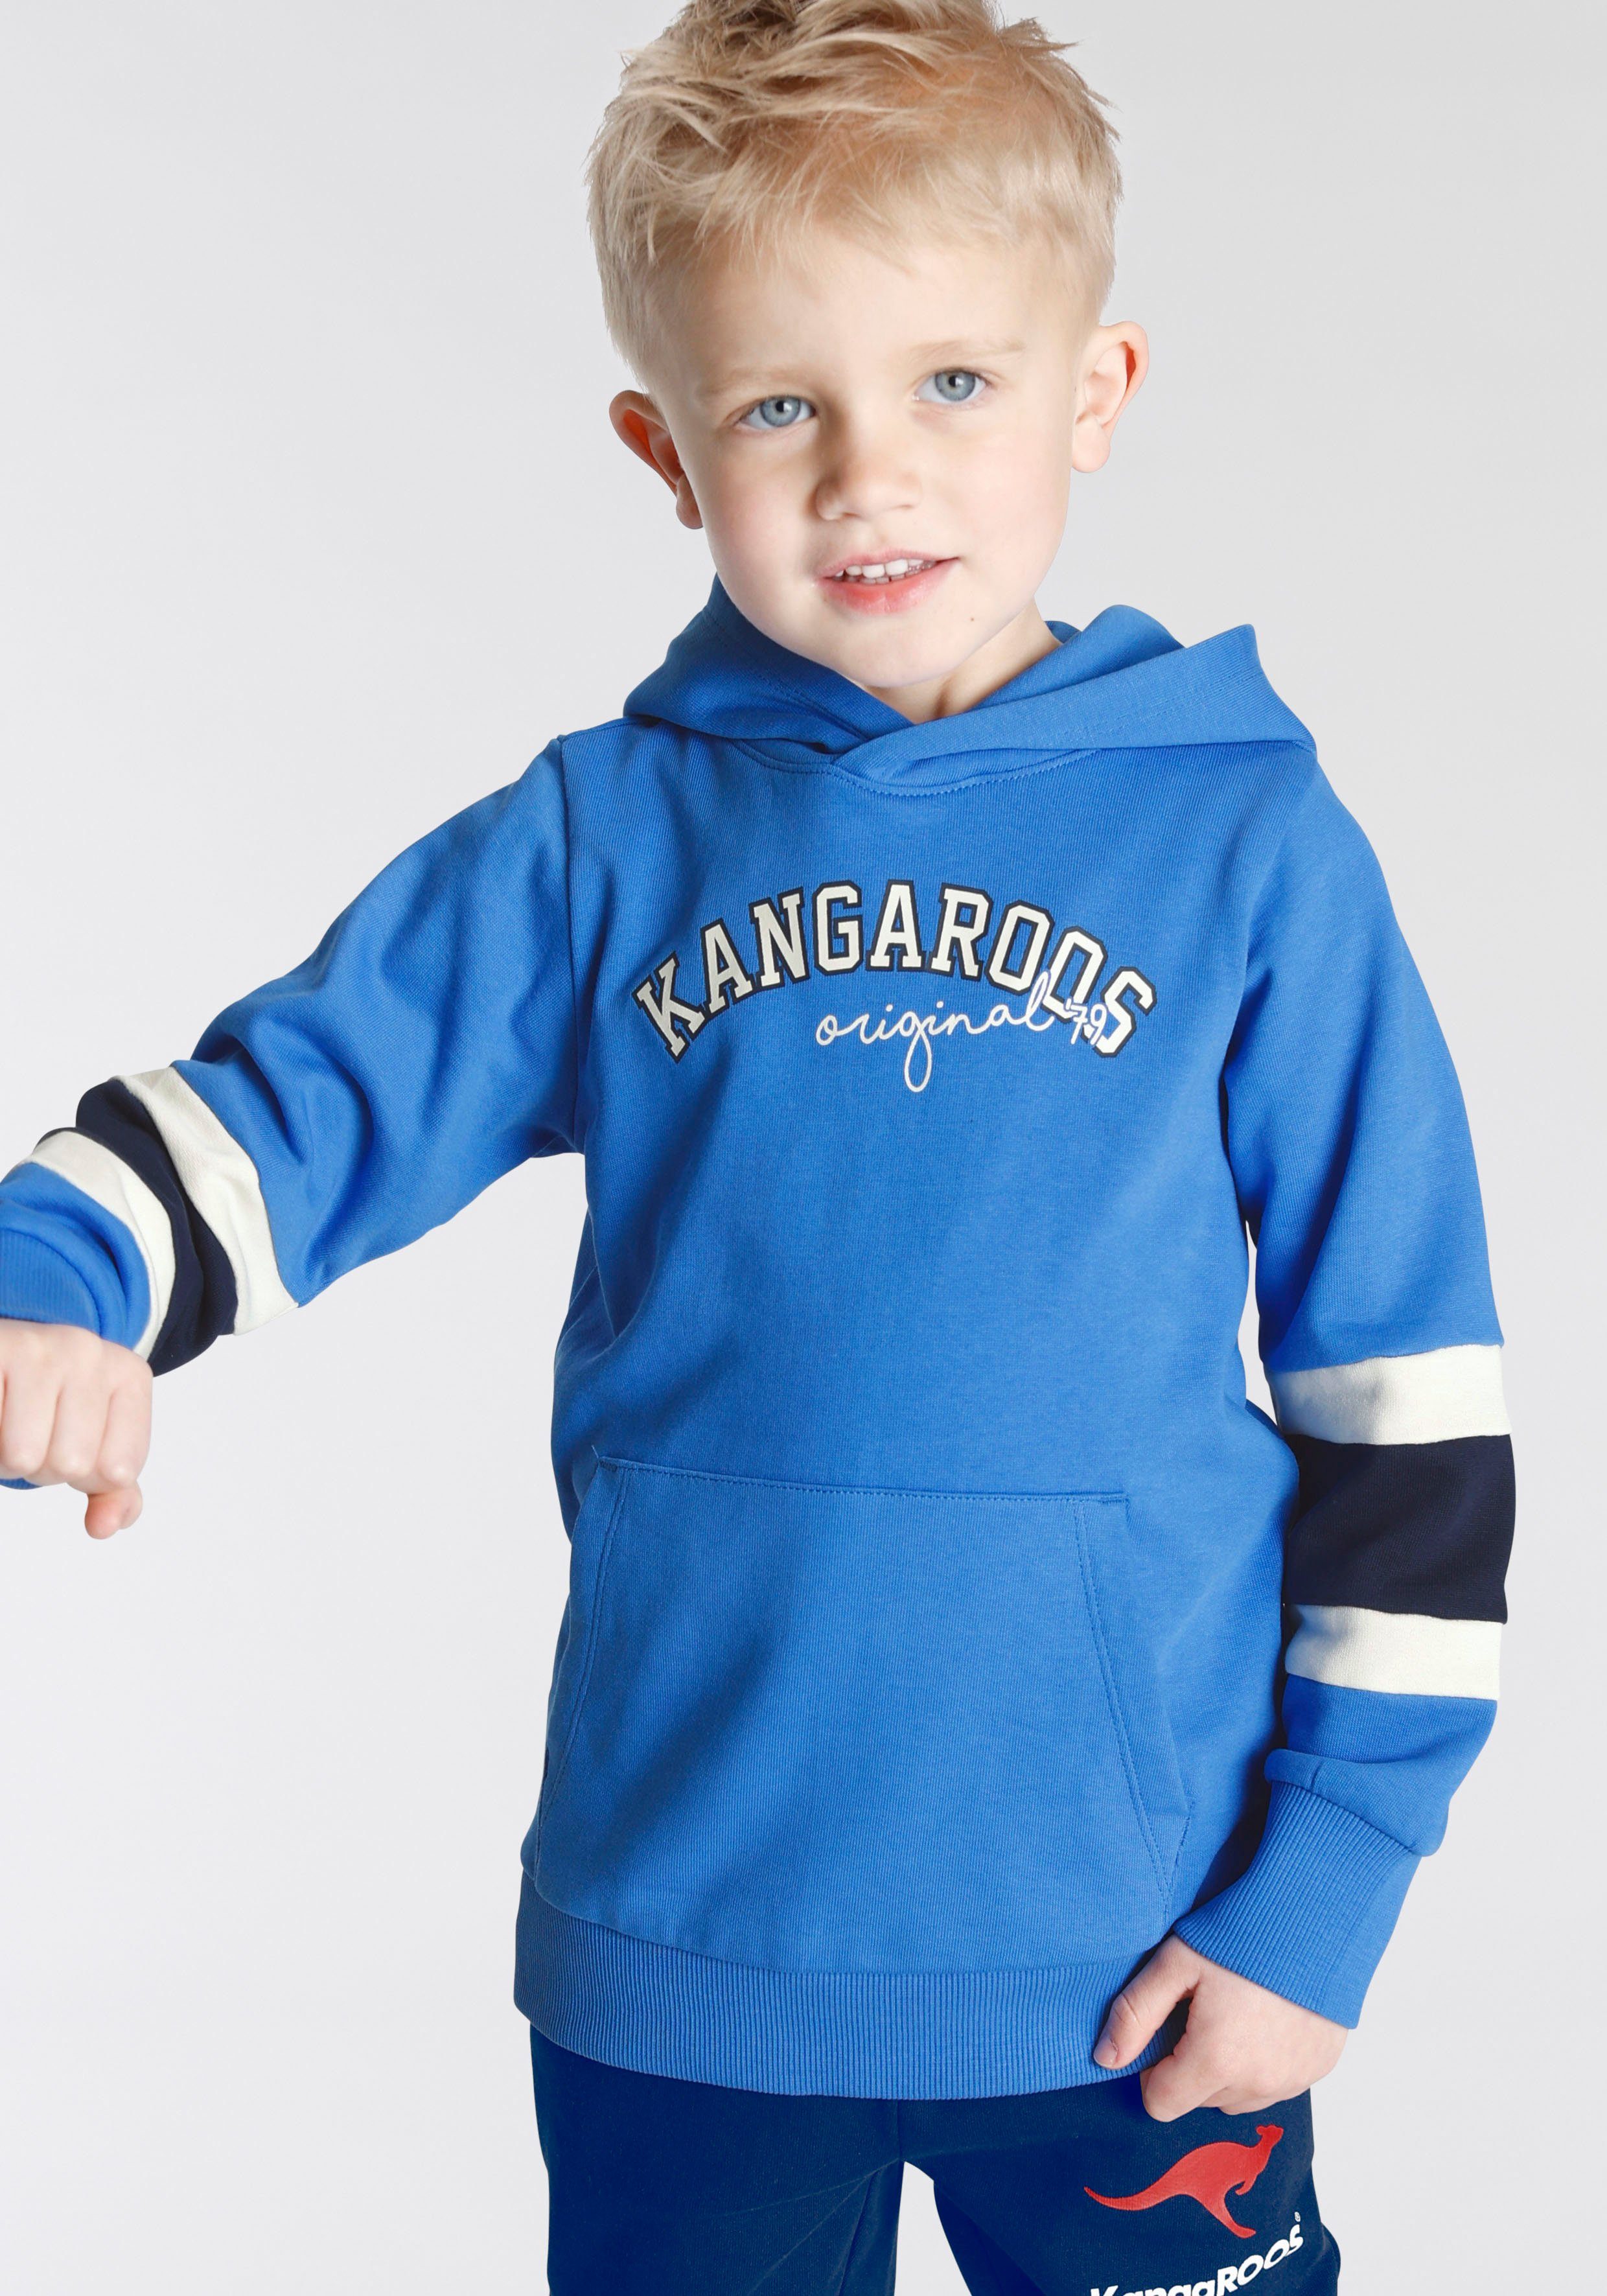 Streifen Kapuzensweatshirt mit an KangaROOS Colorblocking, Jungen Ärmeln, für den Mini